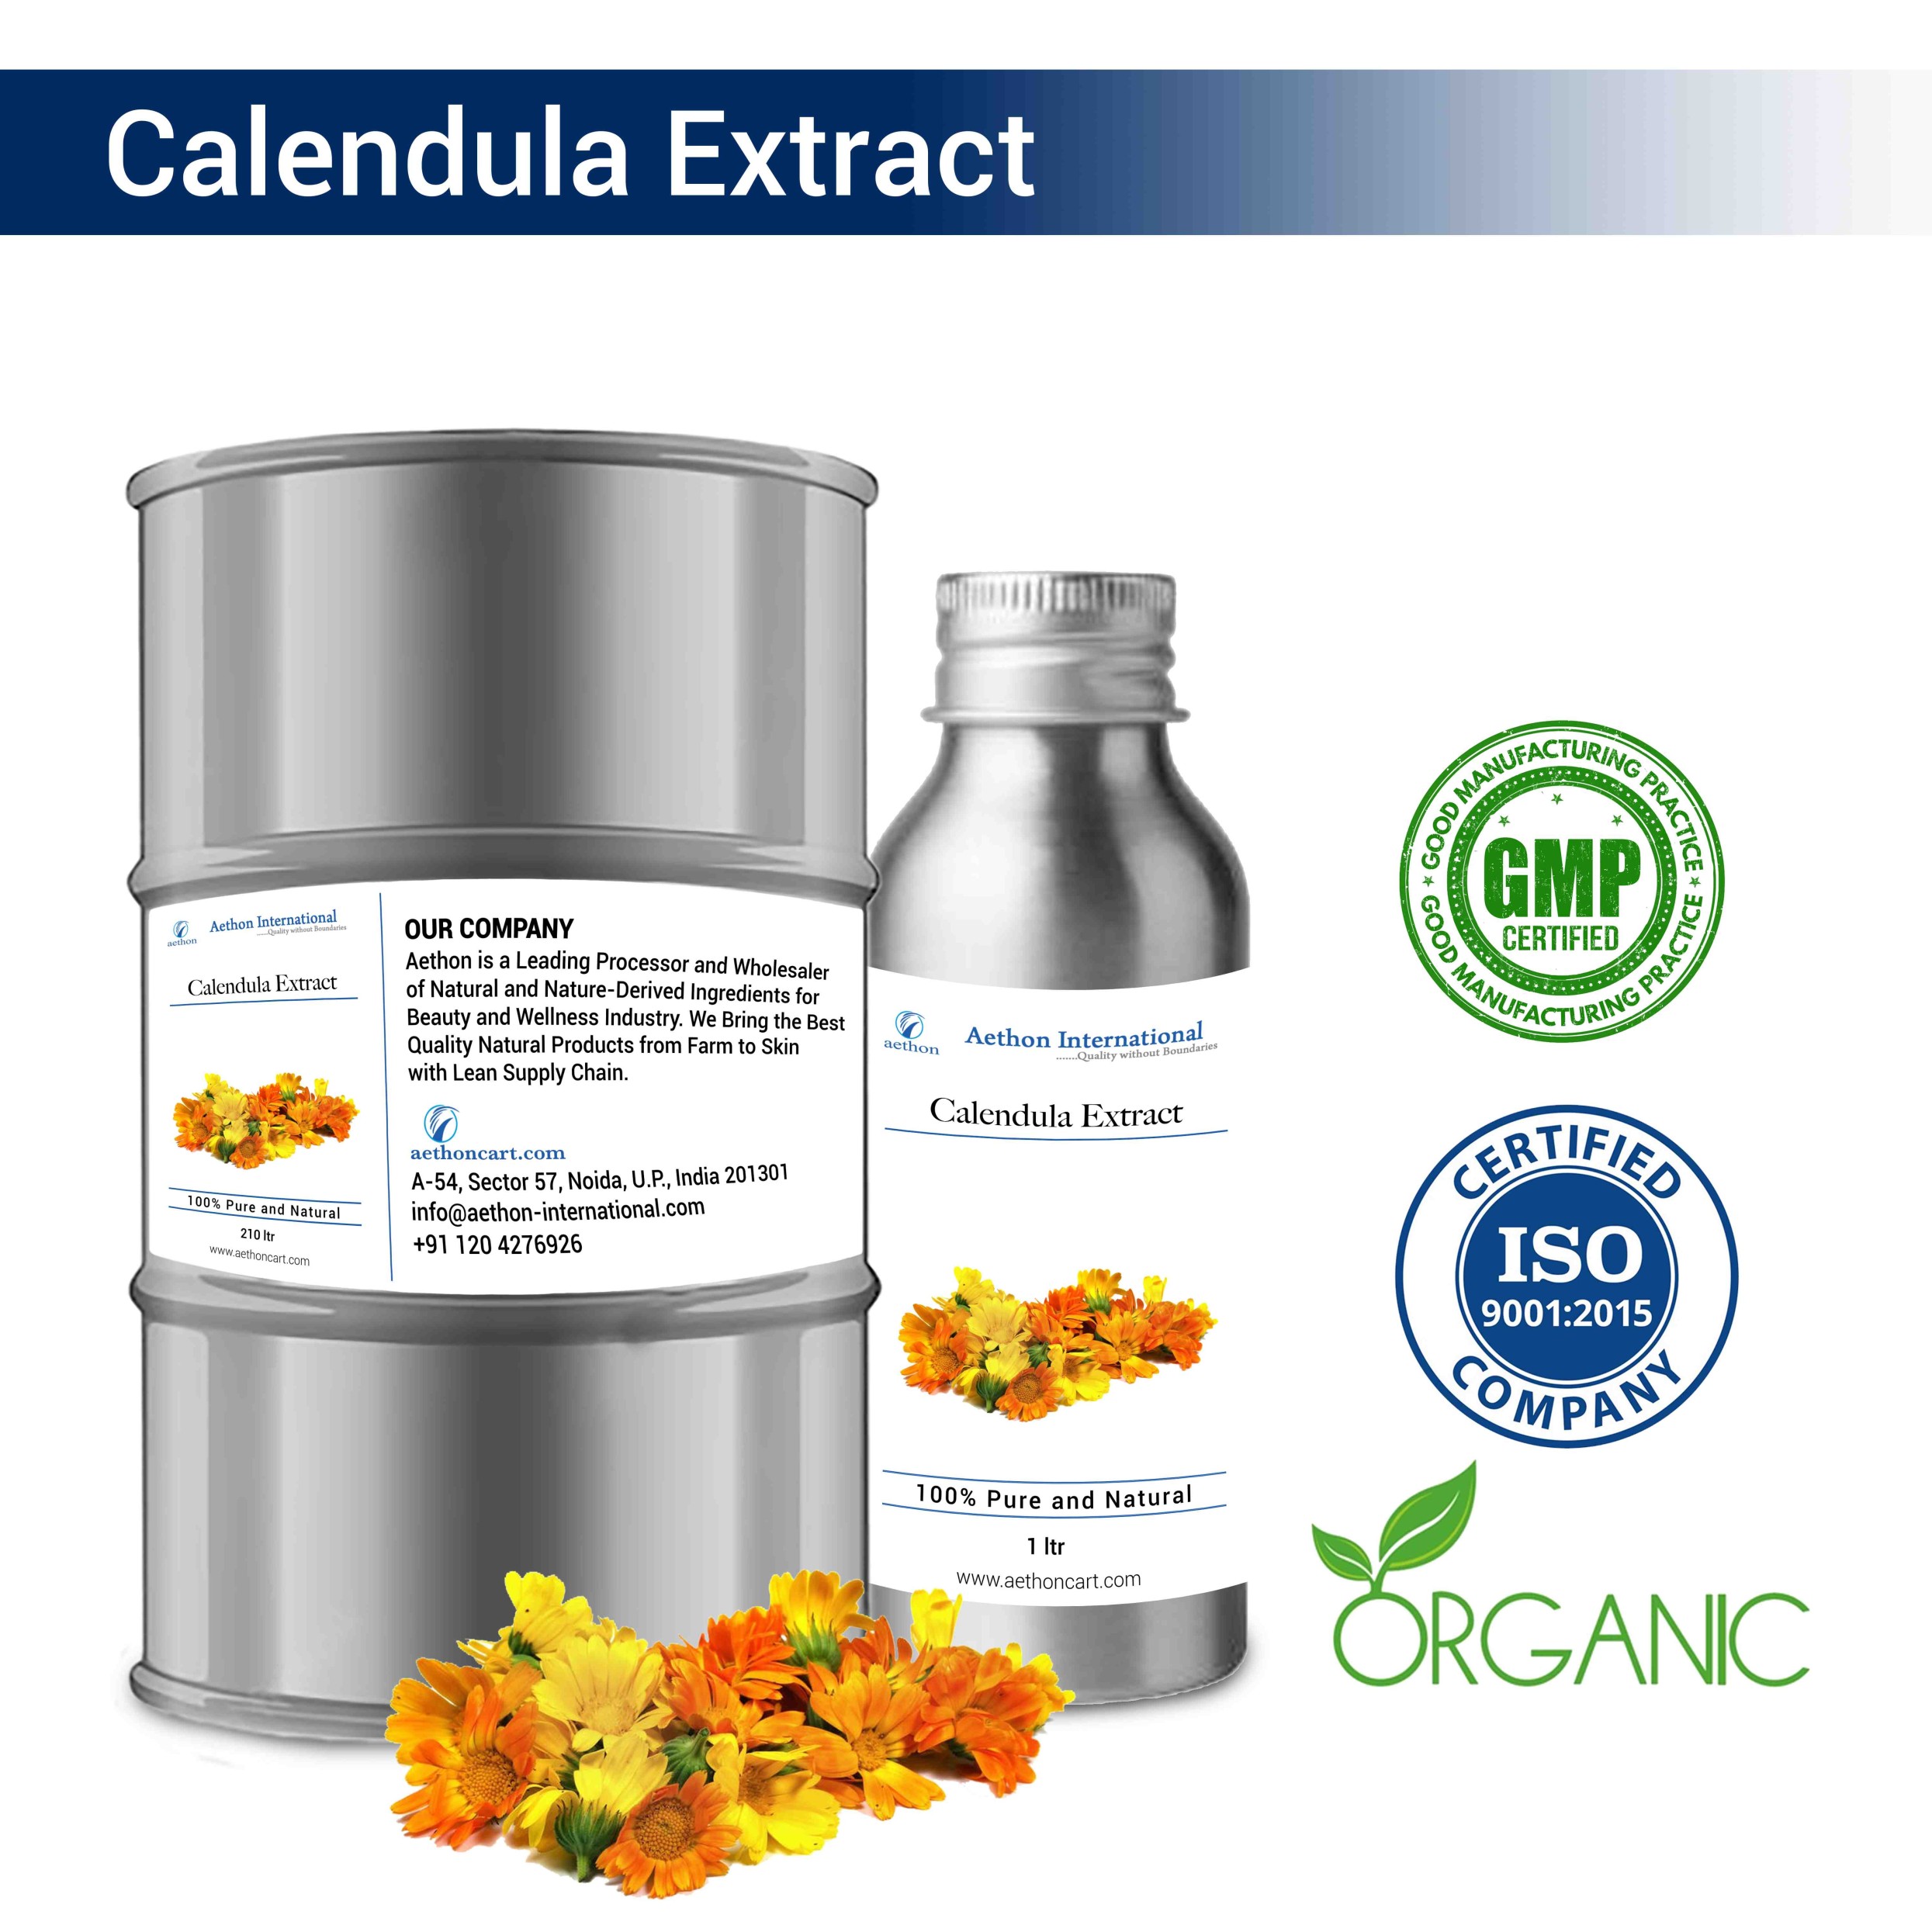 Calendula Extract